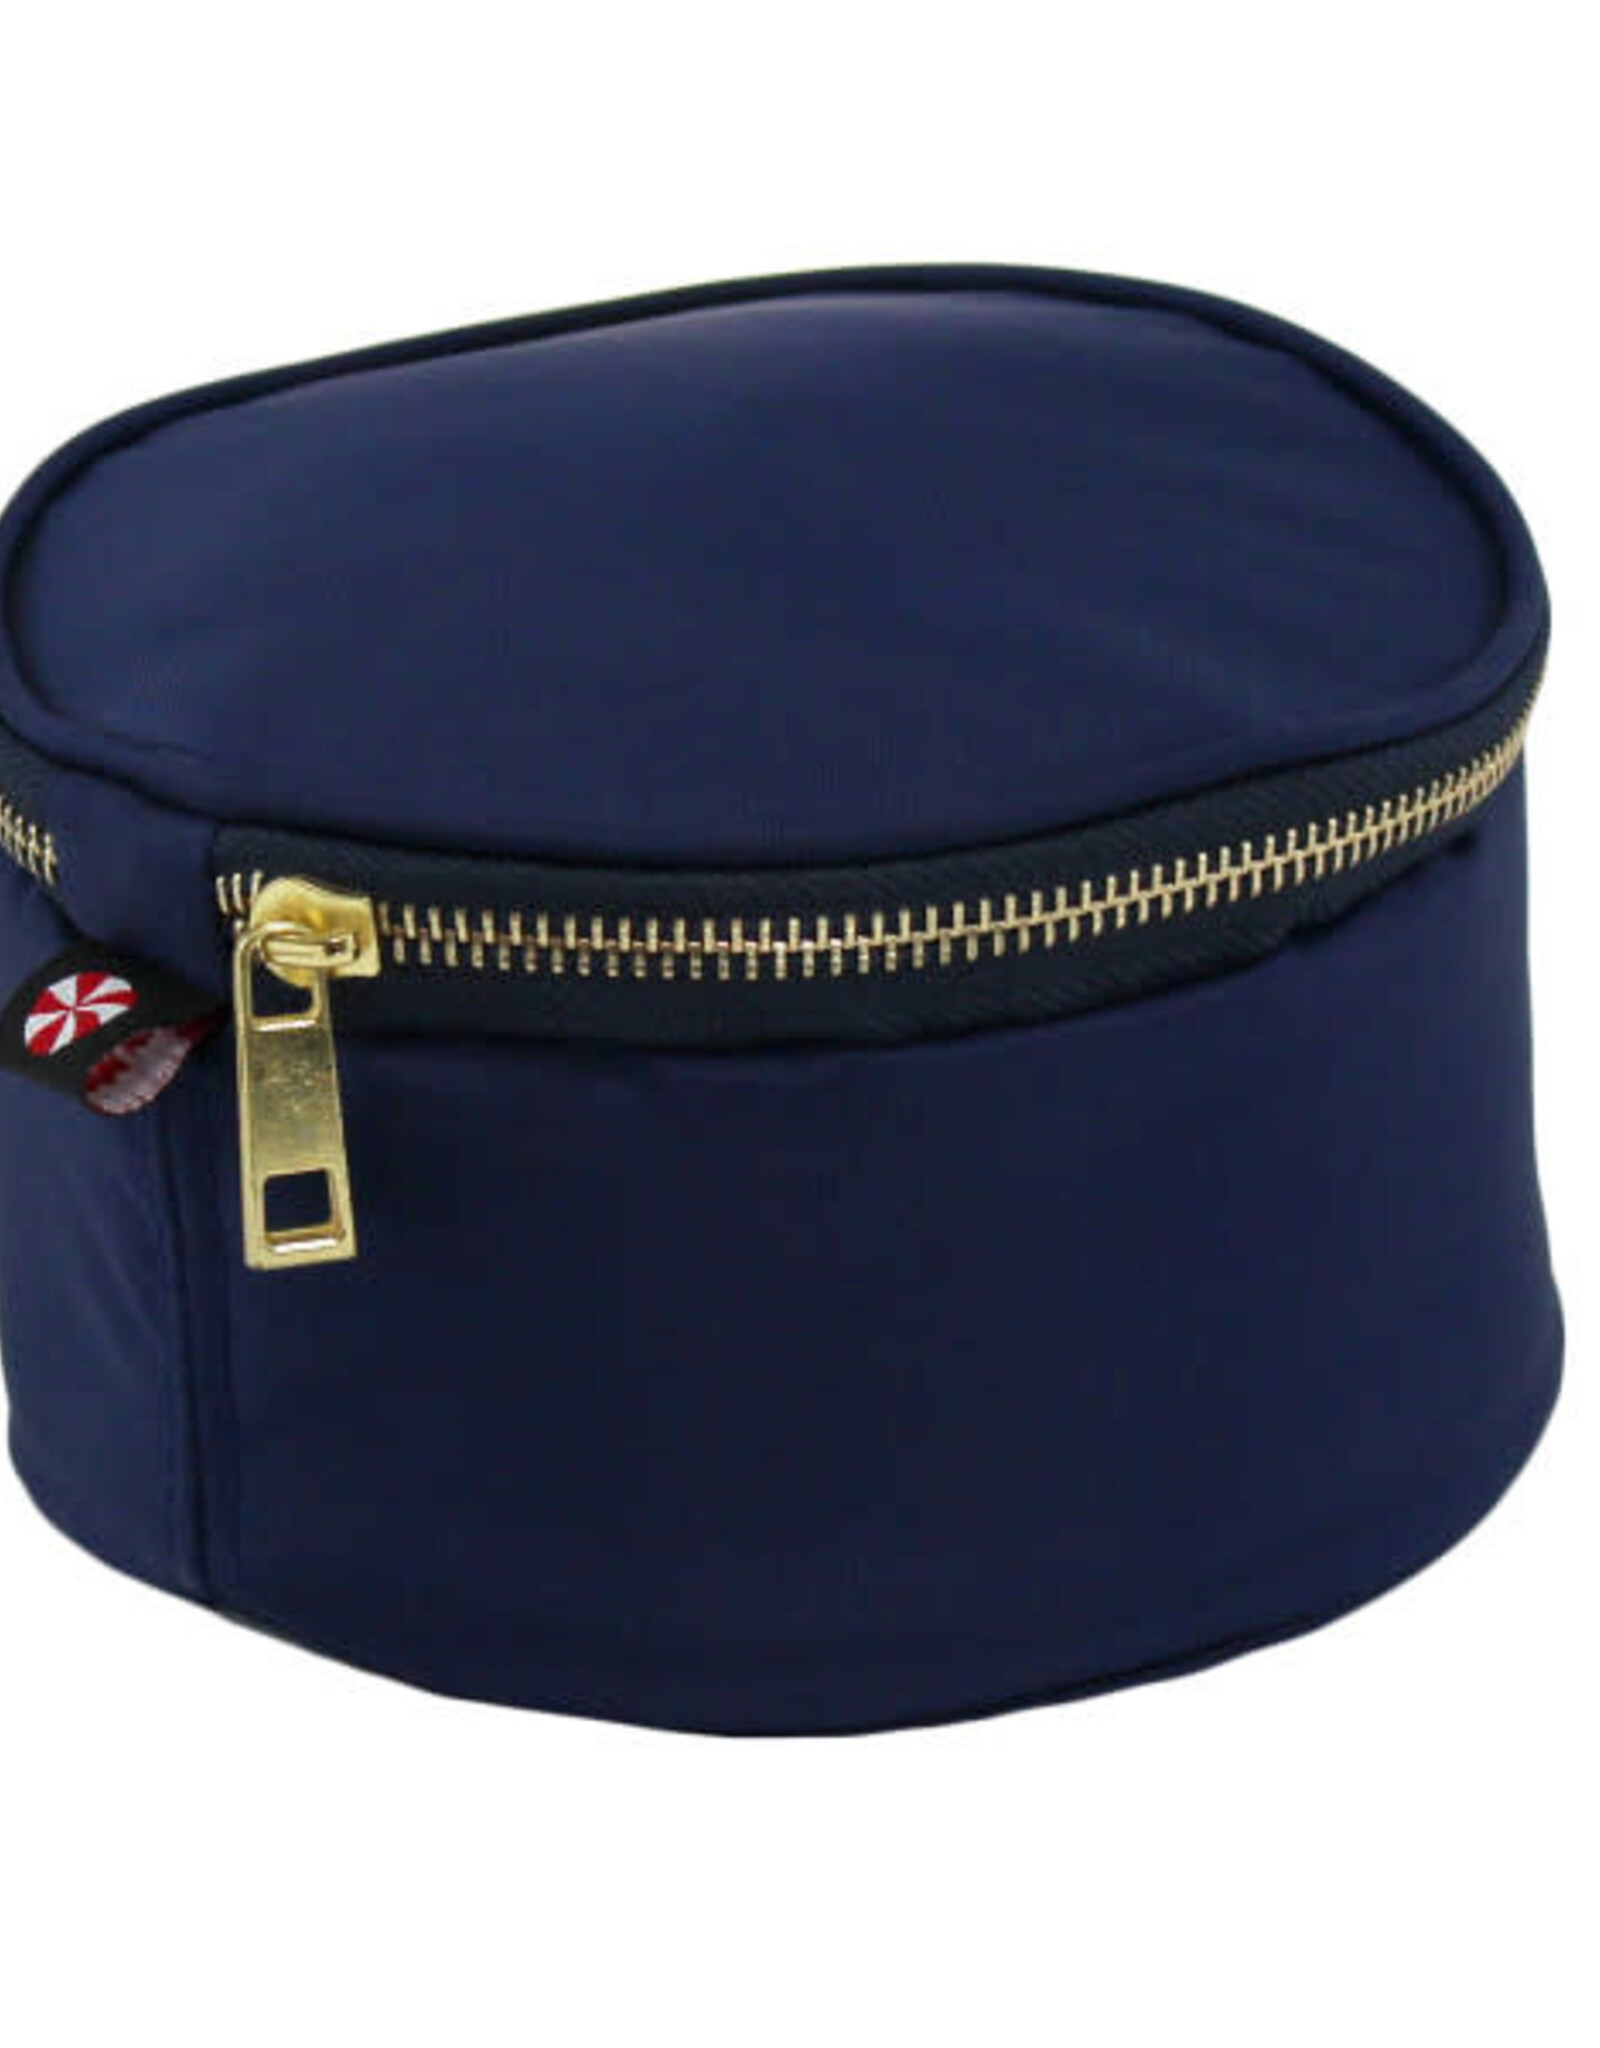 Oh Mint Navy Brass Button Bag 6"